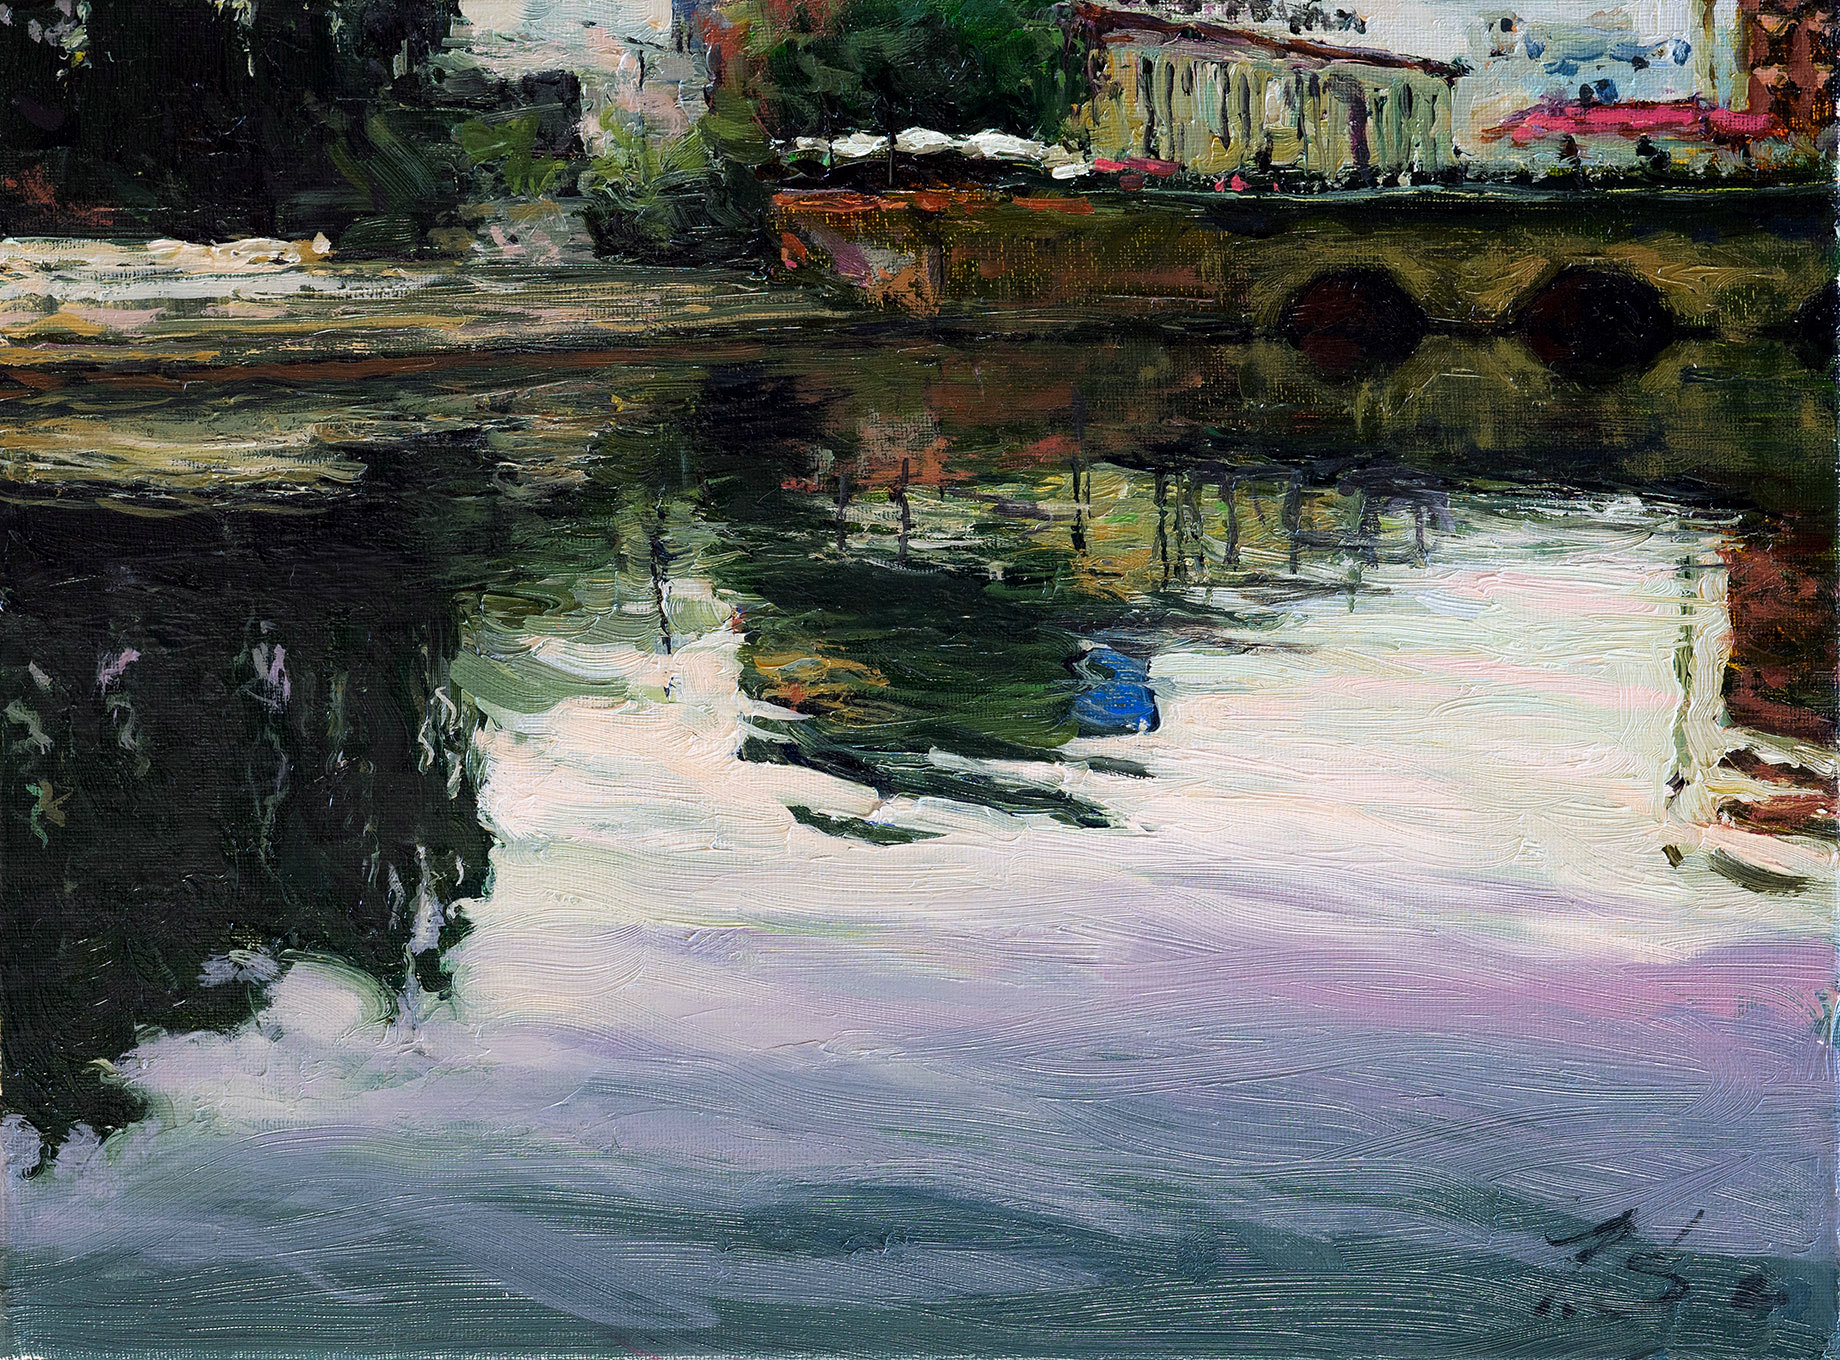 Stone Bridge - 1, Sergei Prokhorov, Buy the painting Oil